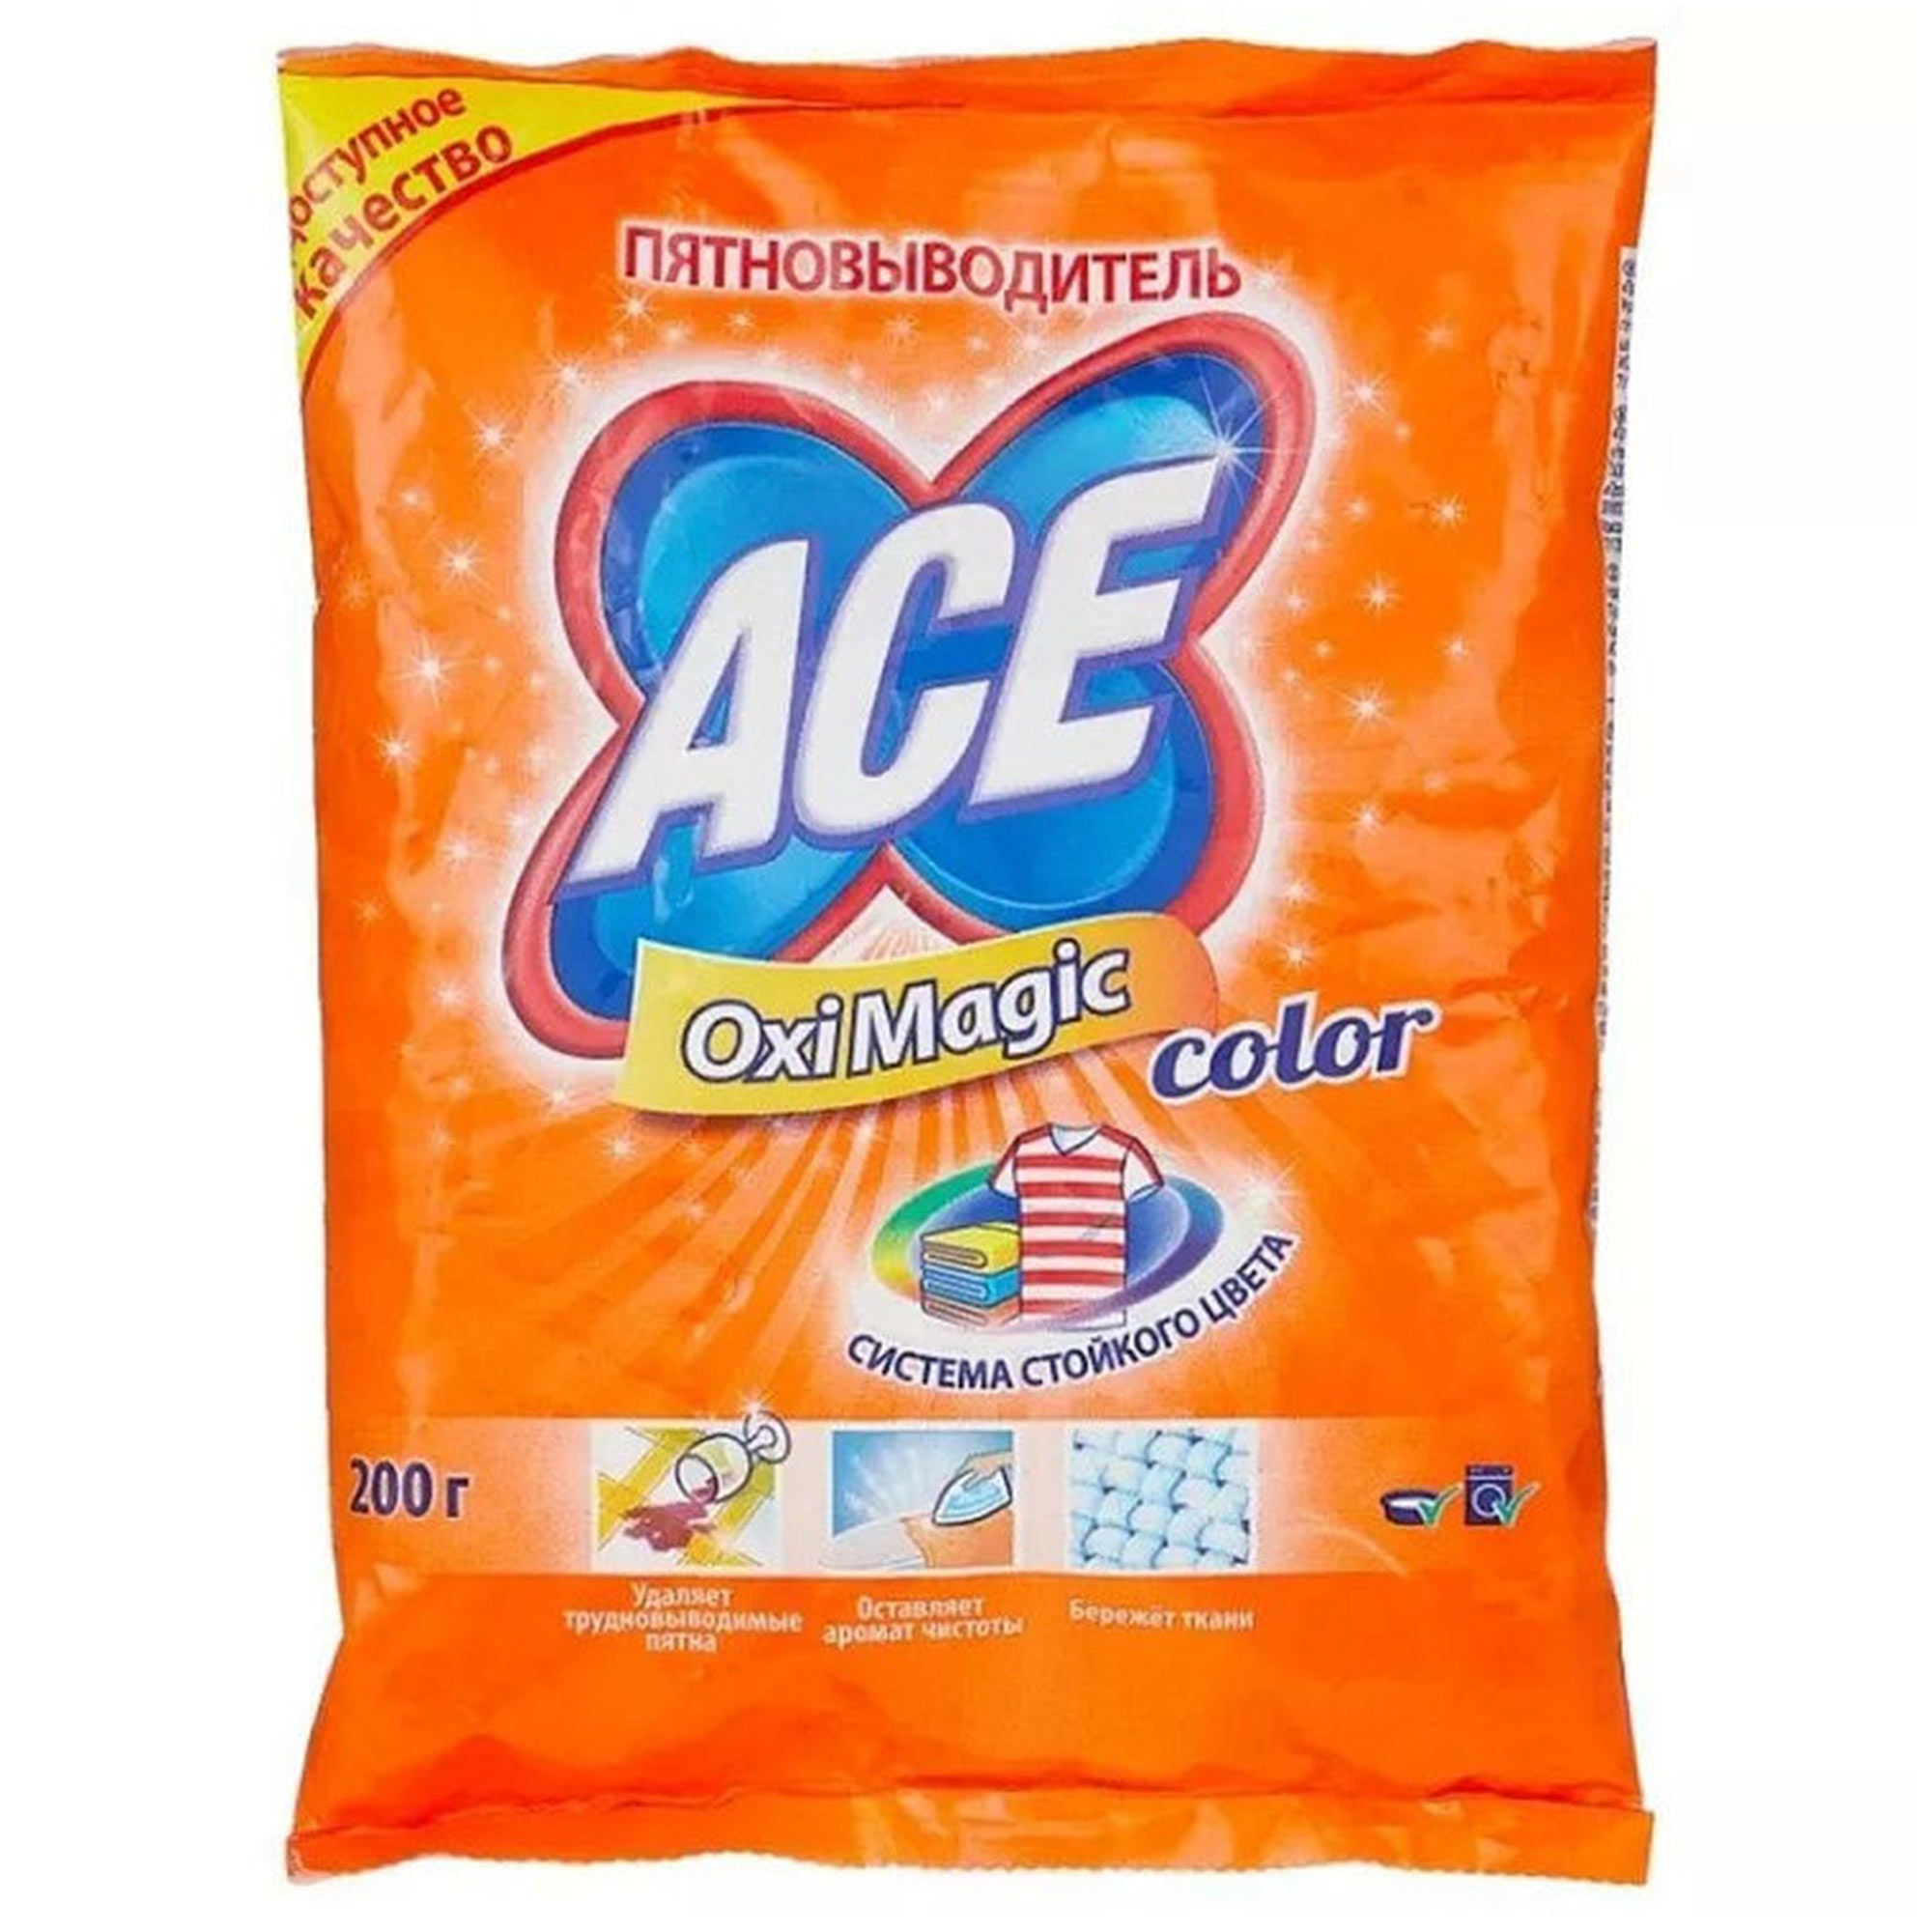 Пятновыводитель  Ace Oxi Magic Color 200 г - фото 1